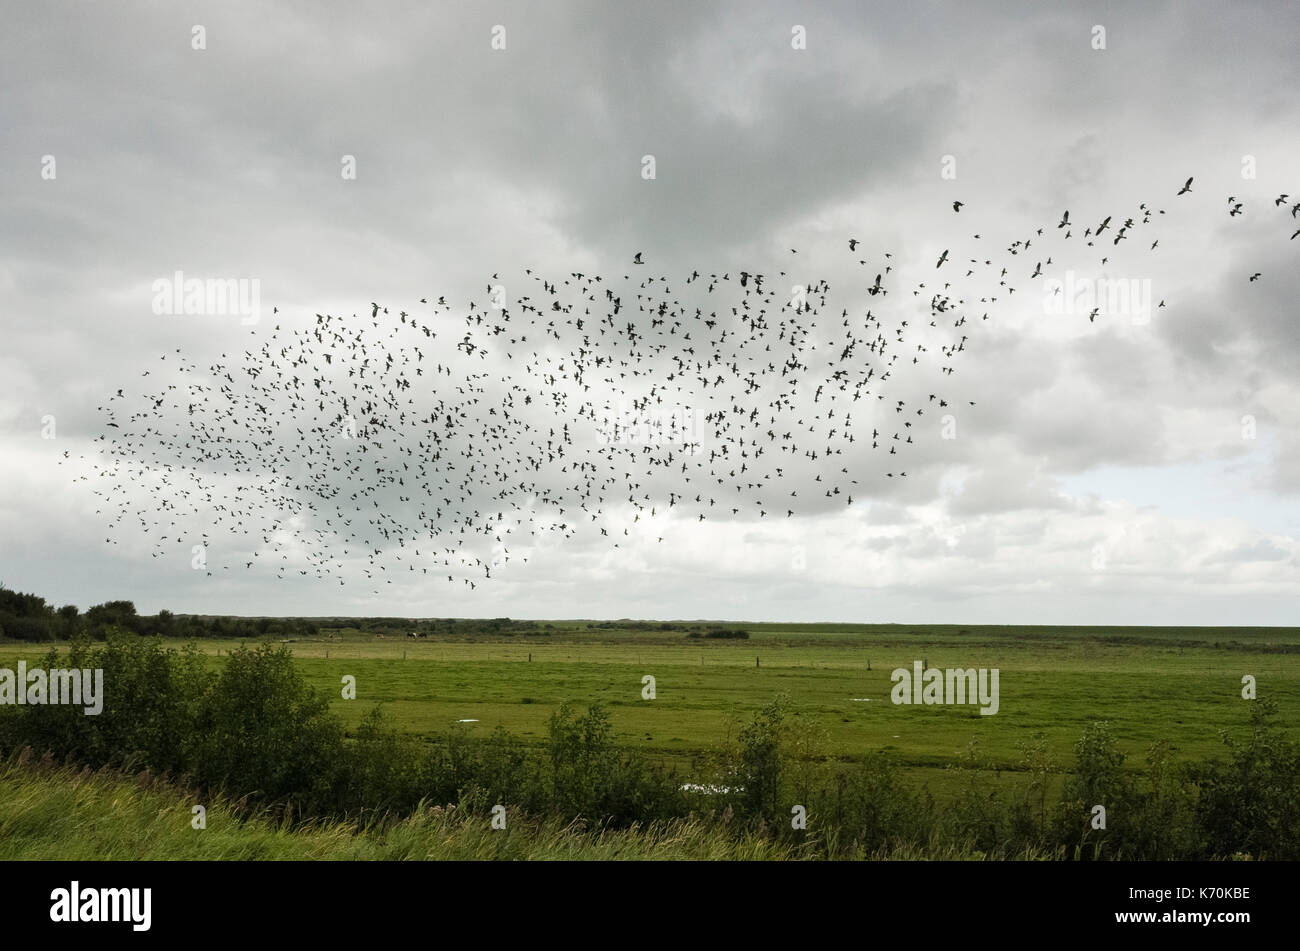 Hafenstraße, Langeoog. Deutschland. Germania. La migrazione di storni volare in formazione oltre i pascoli. Si tratta di un luminoso Nuvoloso Giorno con drammatica nuvole formando uno sfondo dietro gli uccelli. Foto Stock